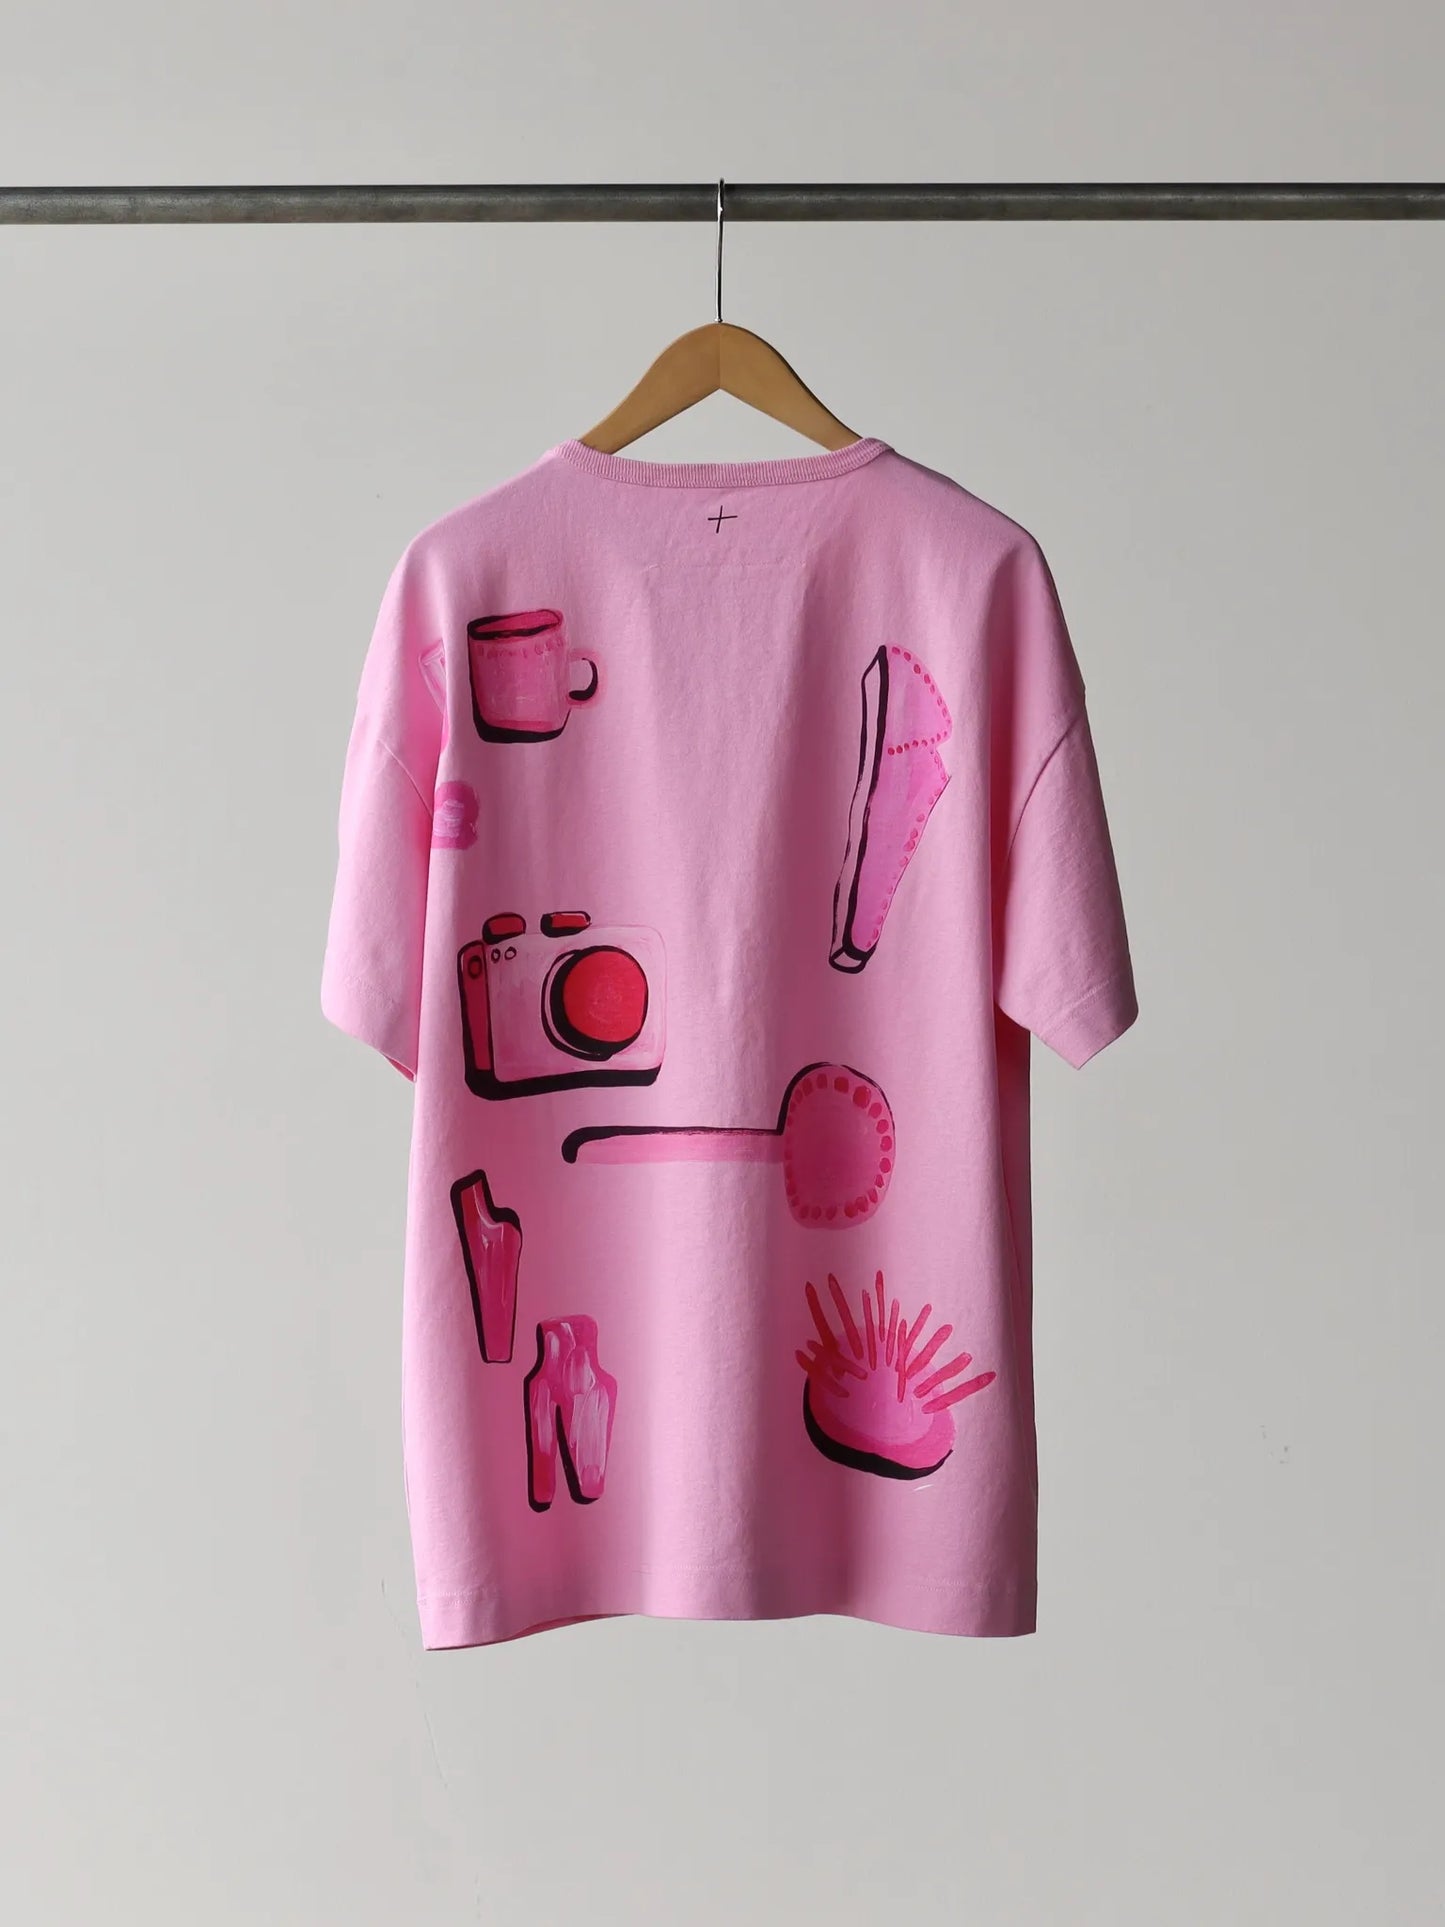 toogood-the-bosun-t-shirt-pink-2